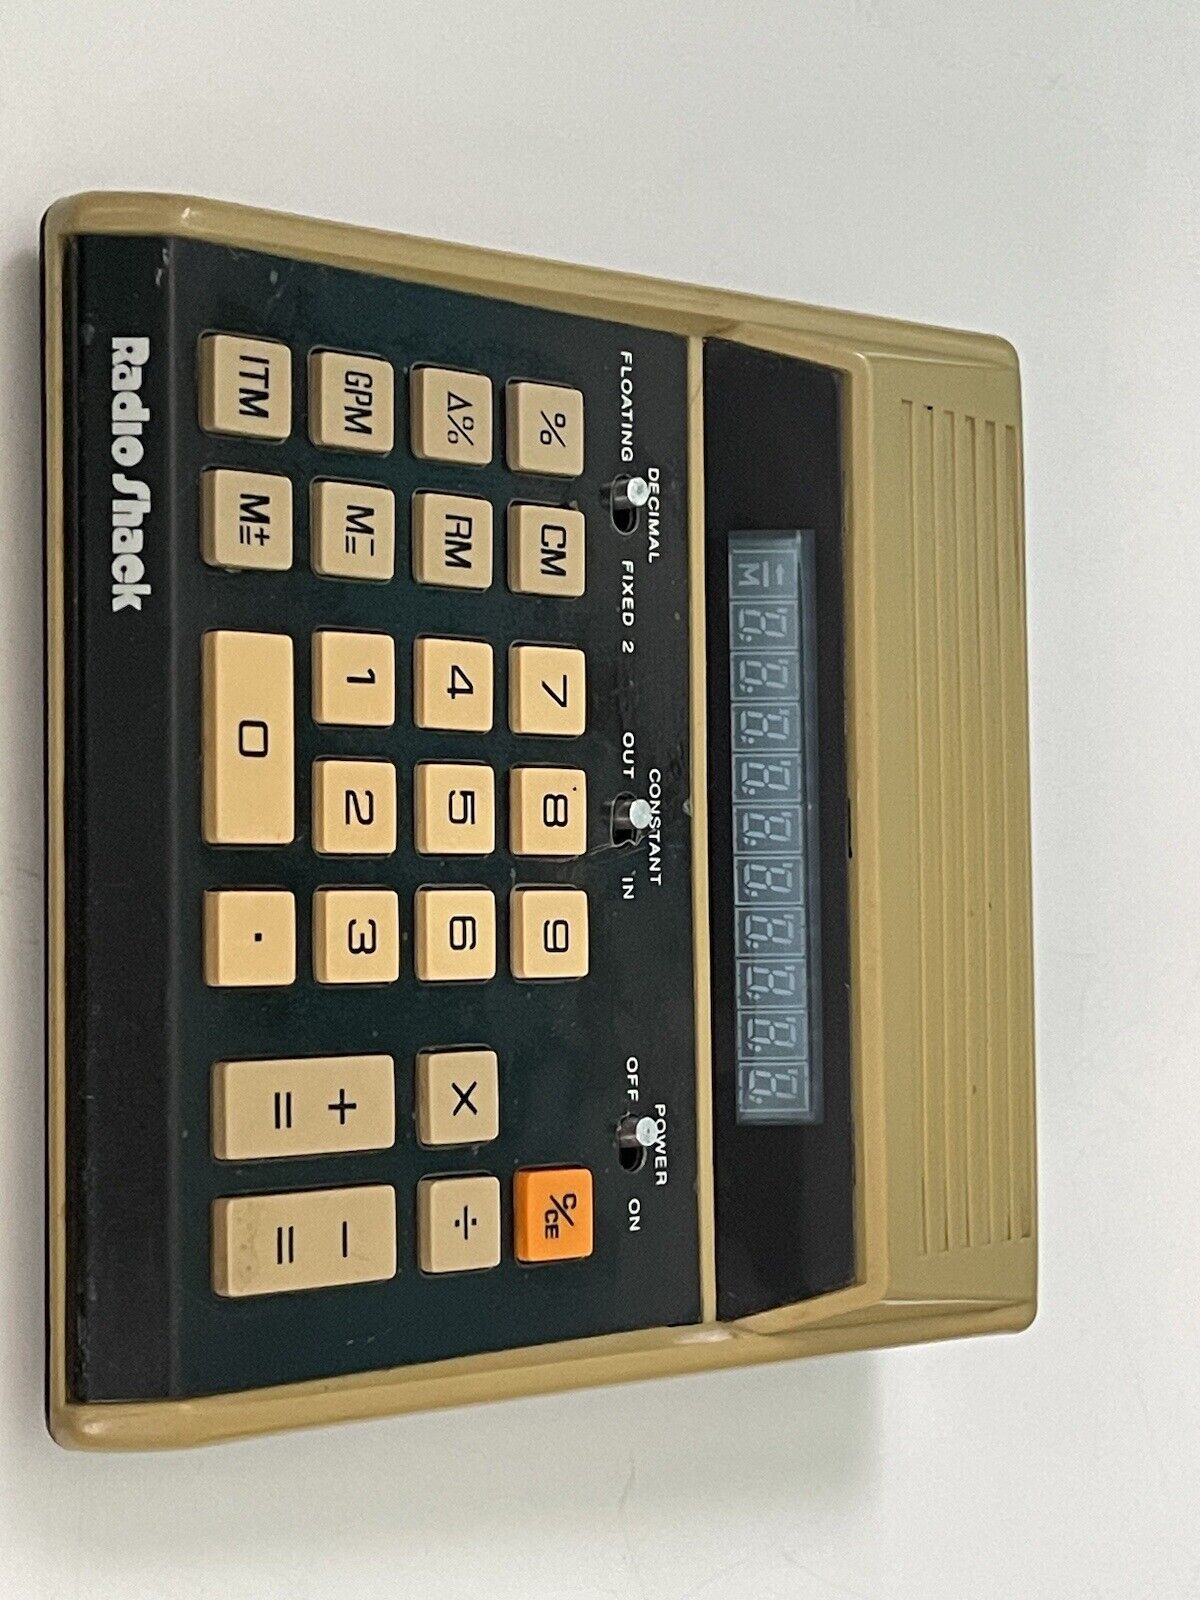 Radio Shack model EC-2001 Vintage Calculator-tested, works